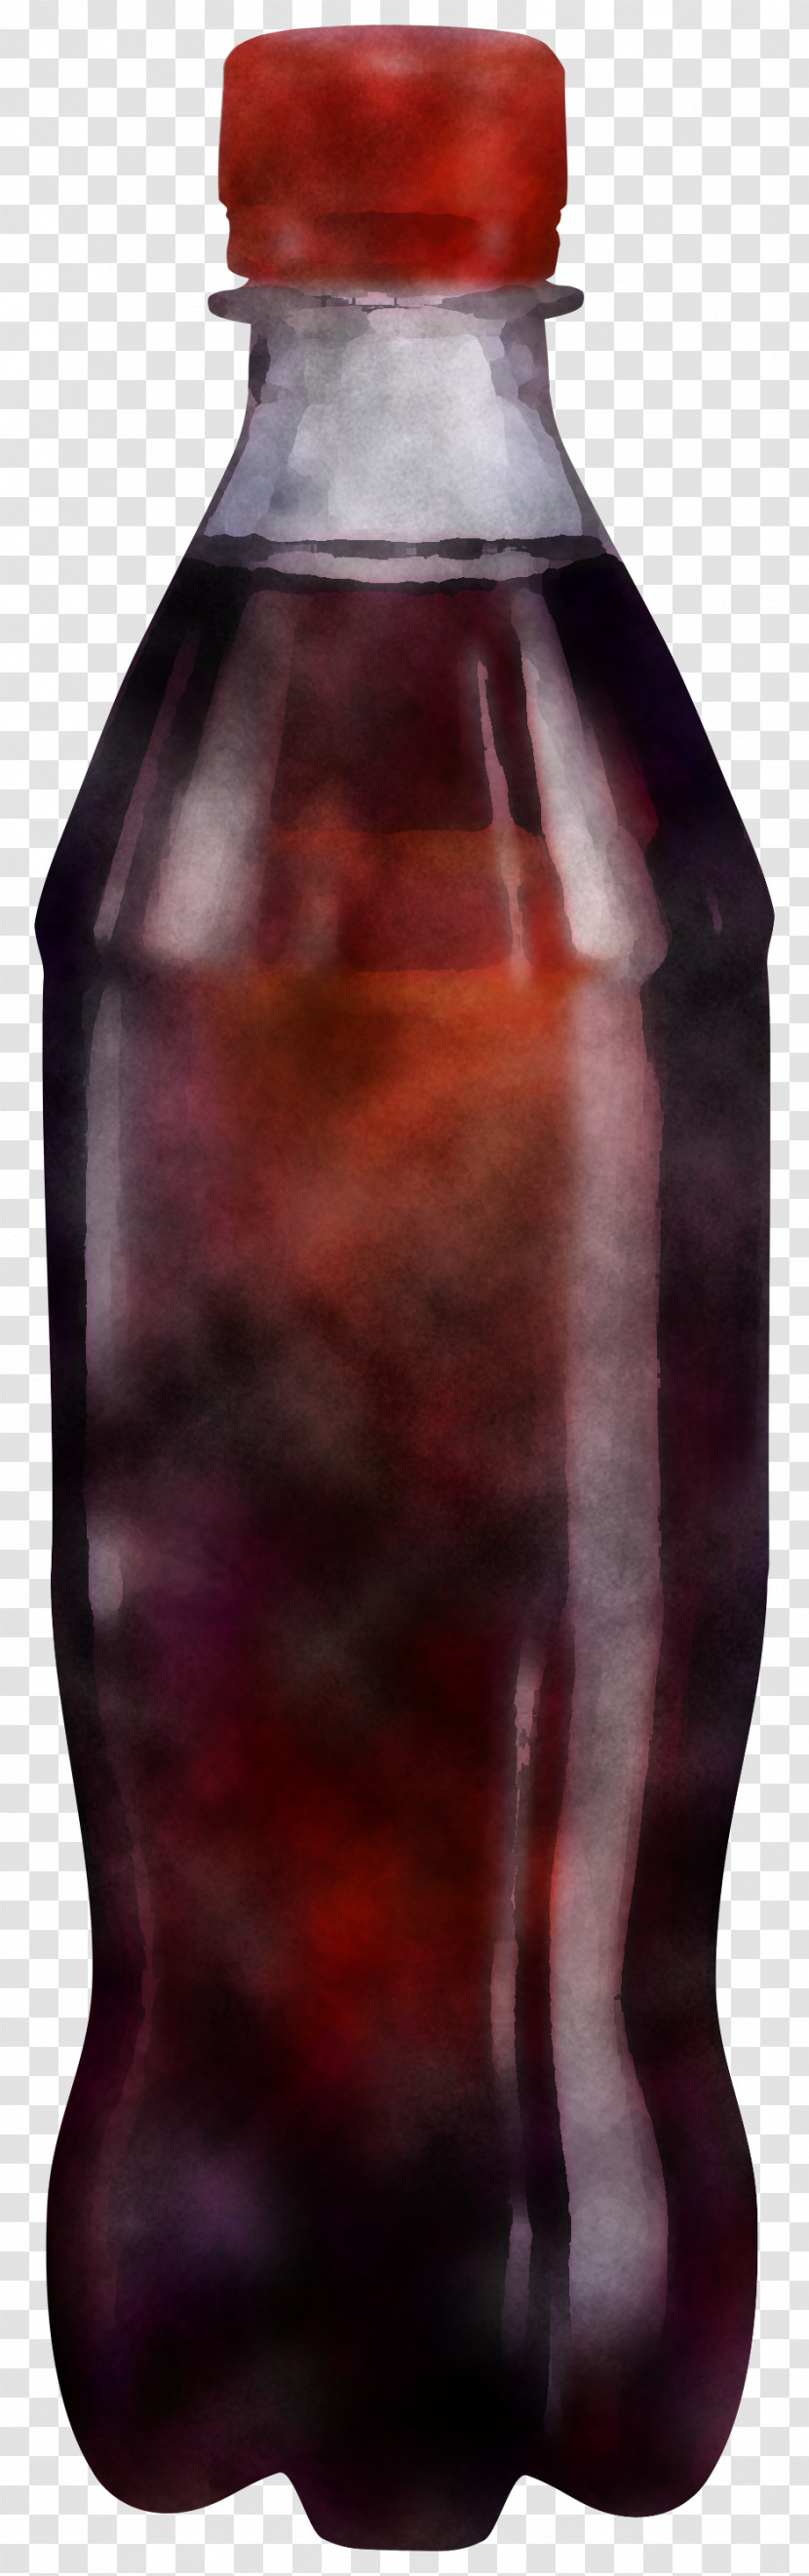 Bottle Drink Glass Bottle Grape Juice Glass Transparent PNG